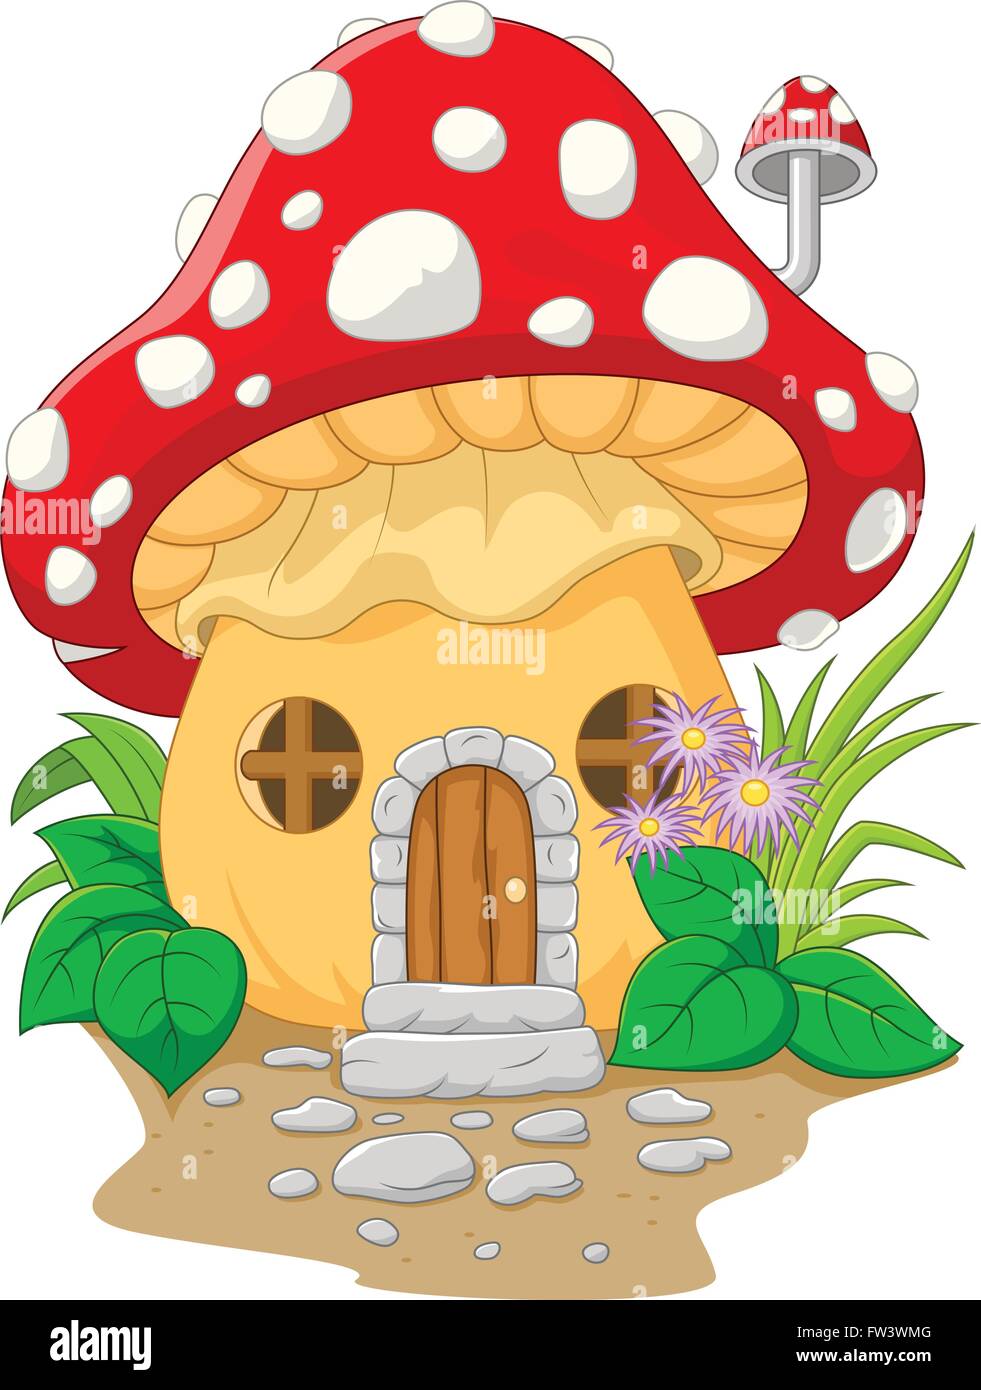 Cartoon mushroom house.vector illustration Stock Vector